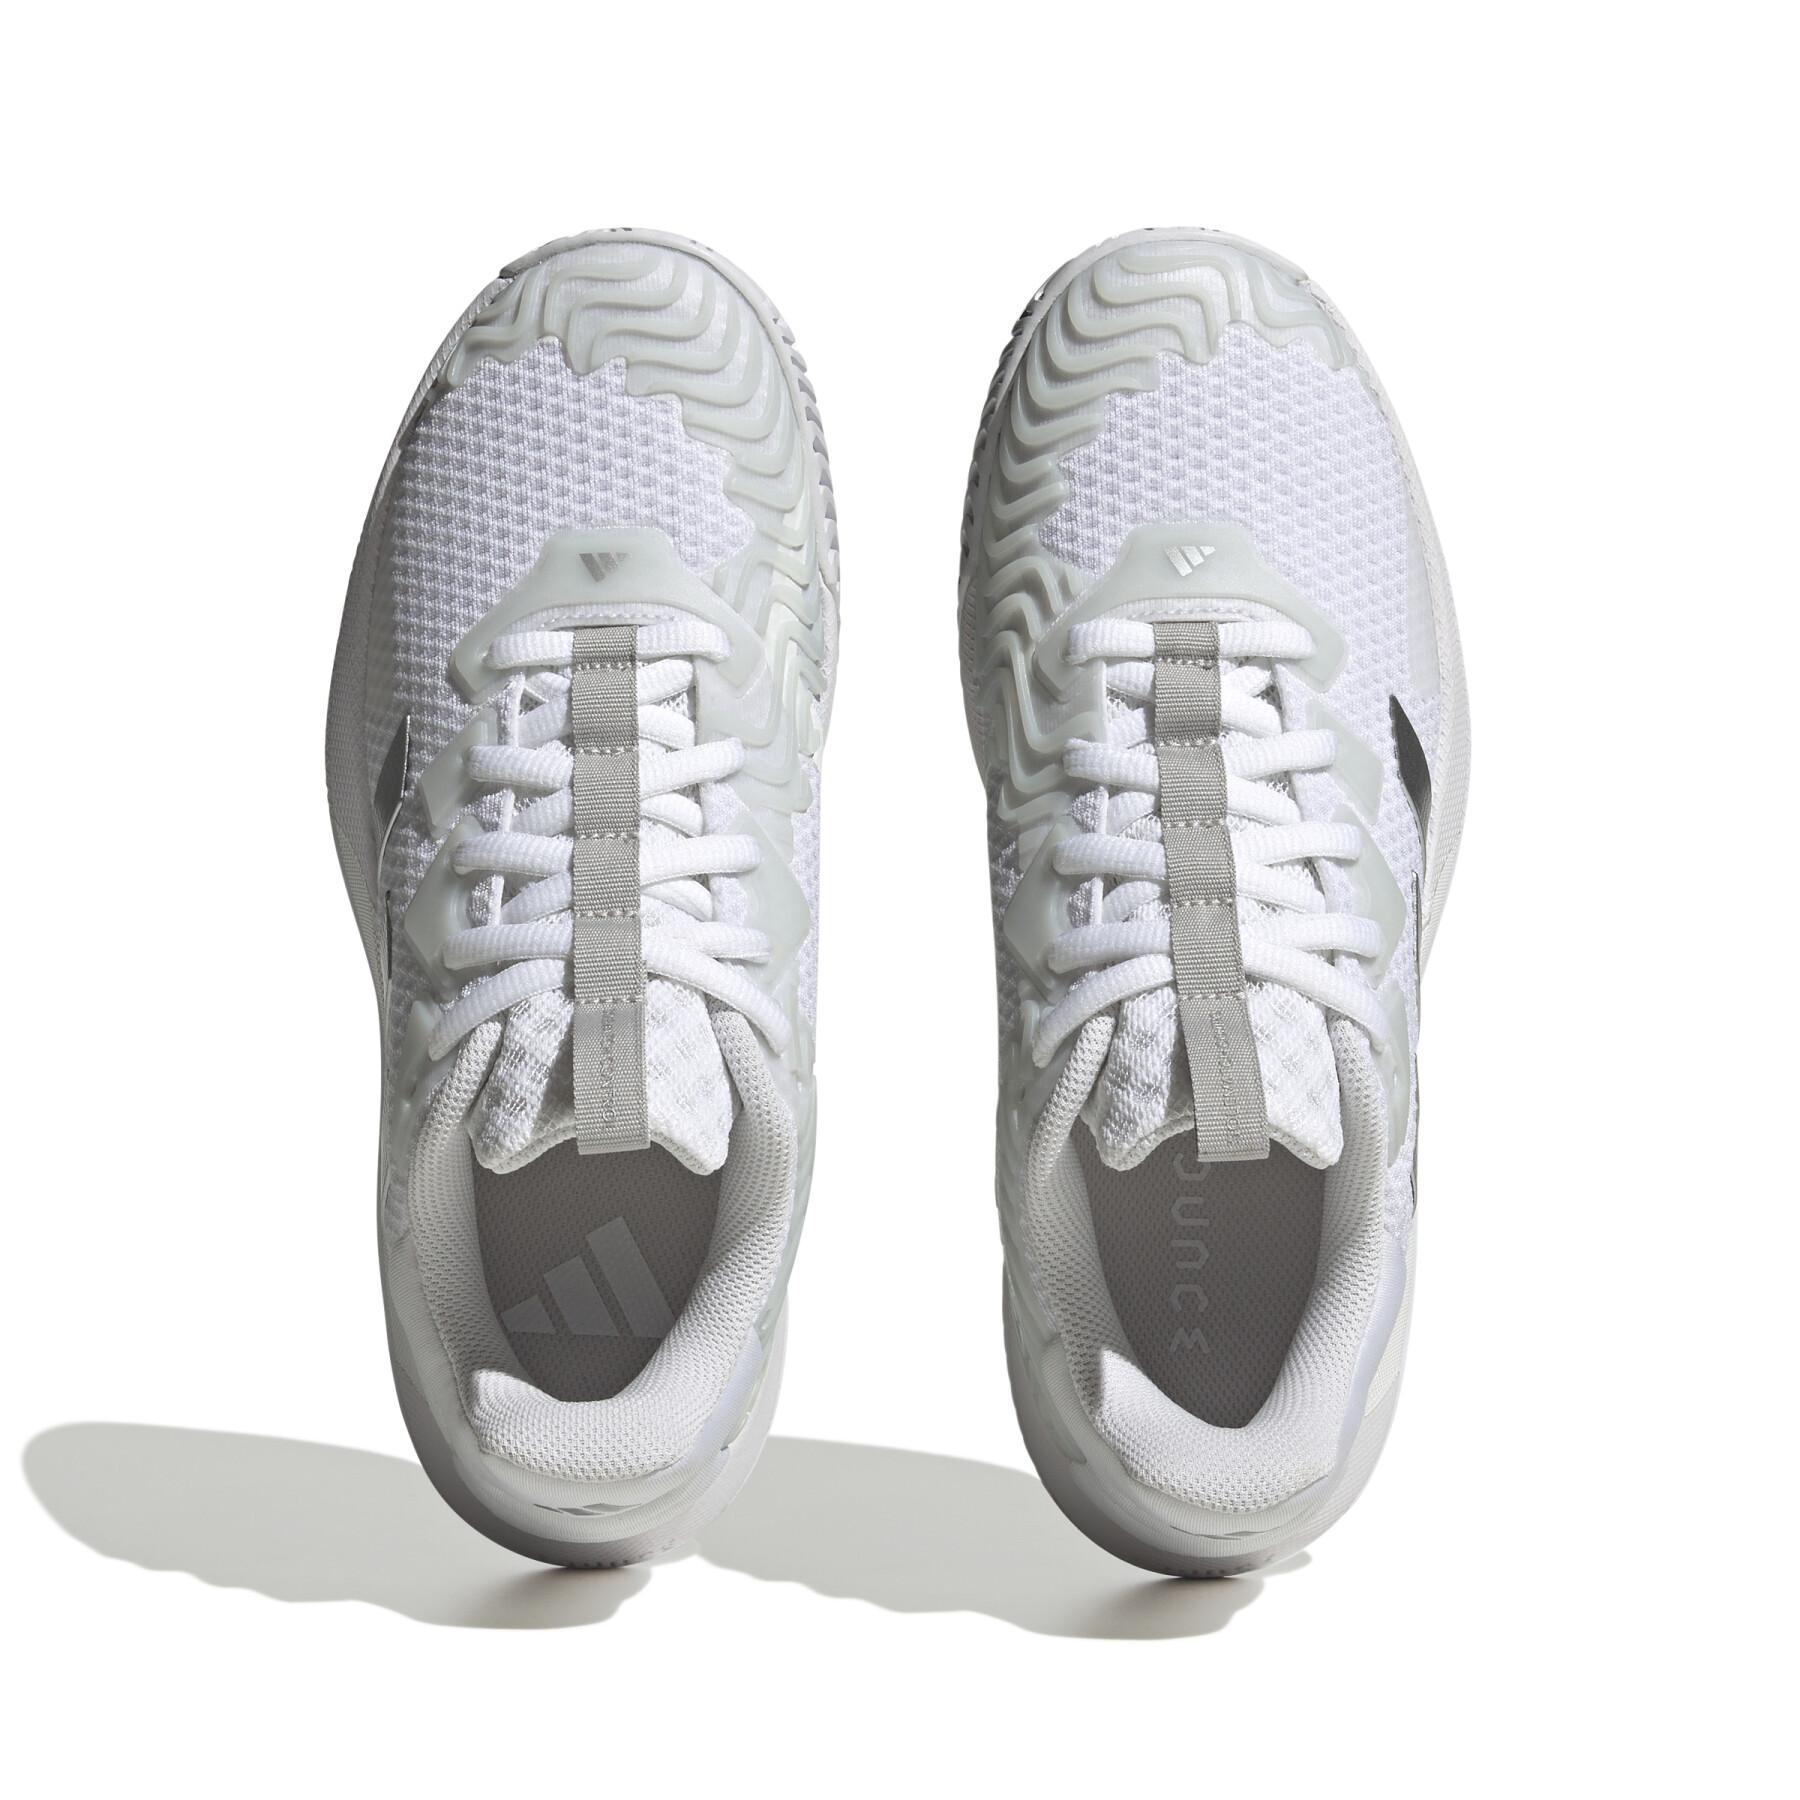 Sapatos de ténis femininos adidas SoleMatch Control